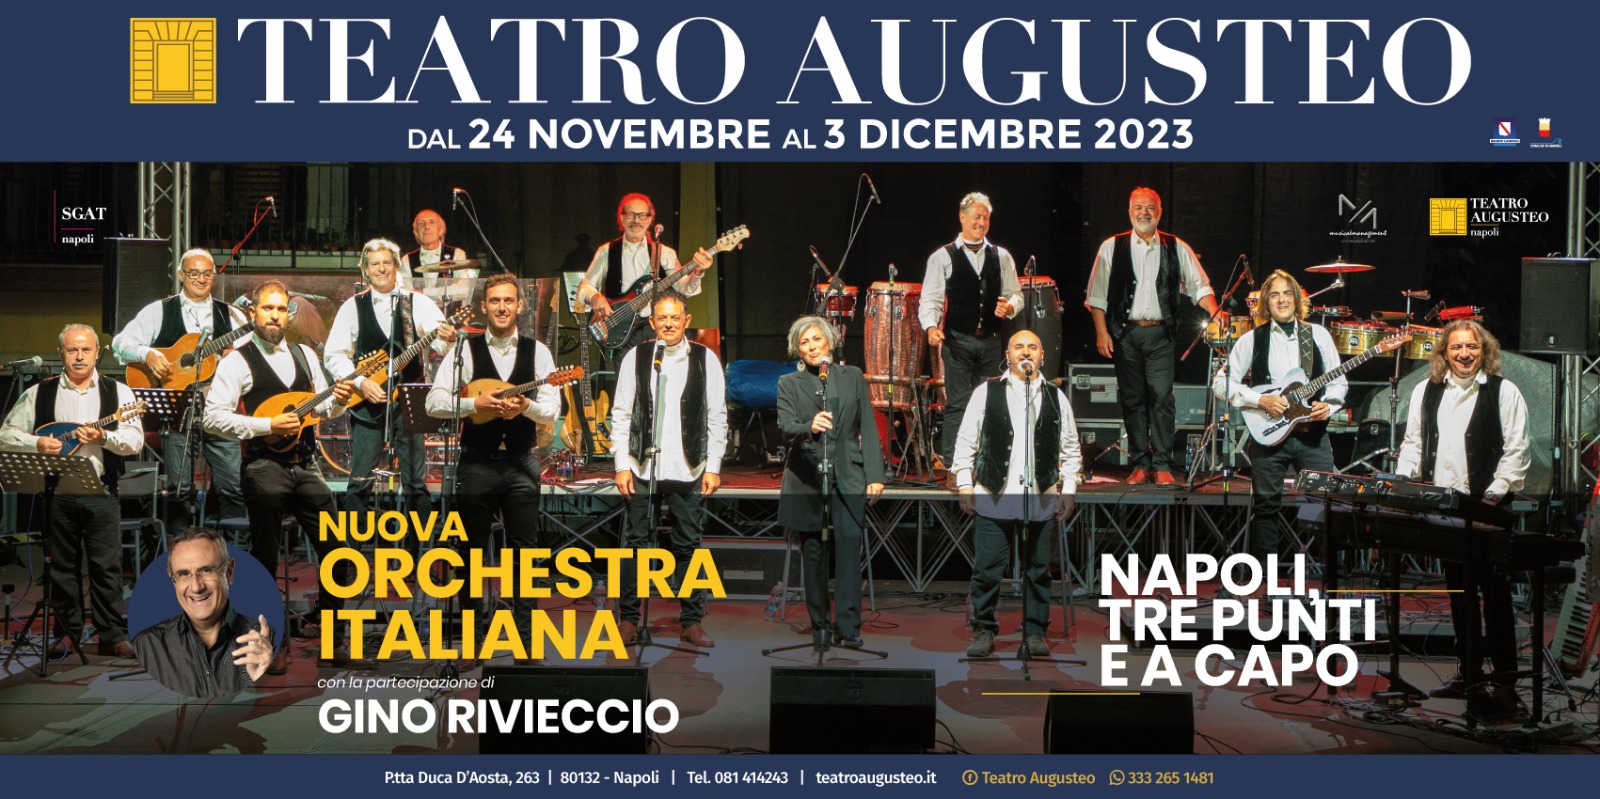 Dal 24 novembre al 3 dicembre: la "Nuova Orchestra Italiana" al Teatro Augusteo - Napolitan.it